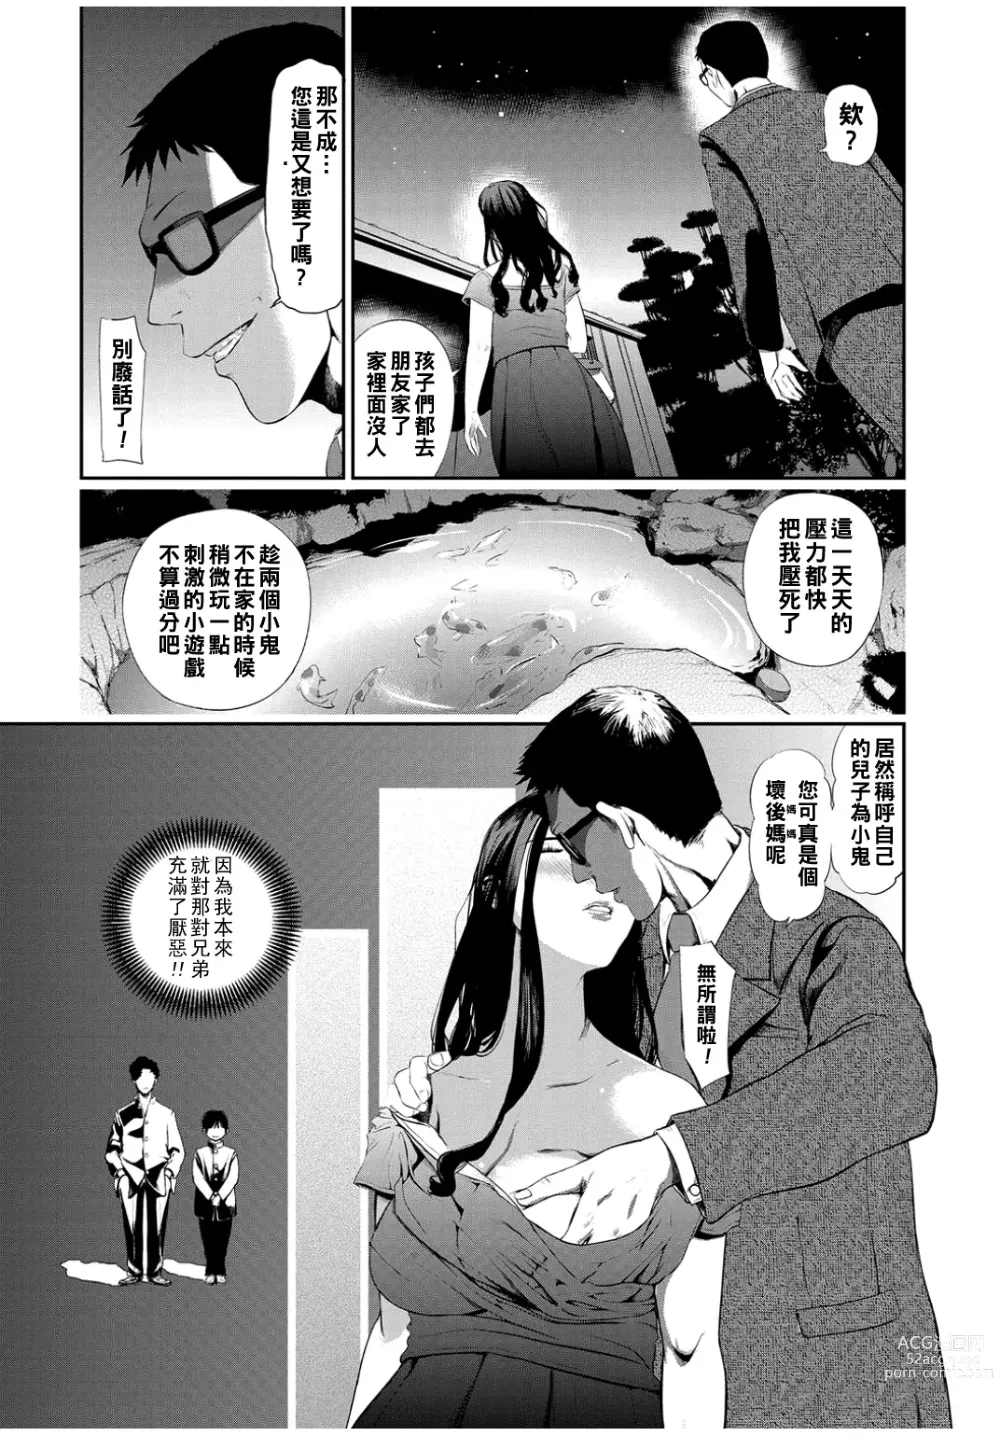 Page 3 of manga Gibo Change